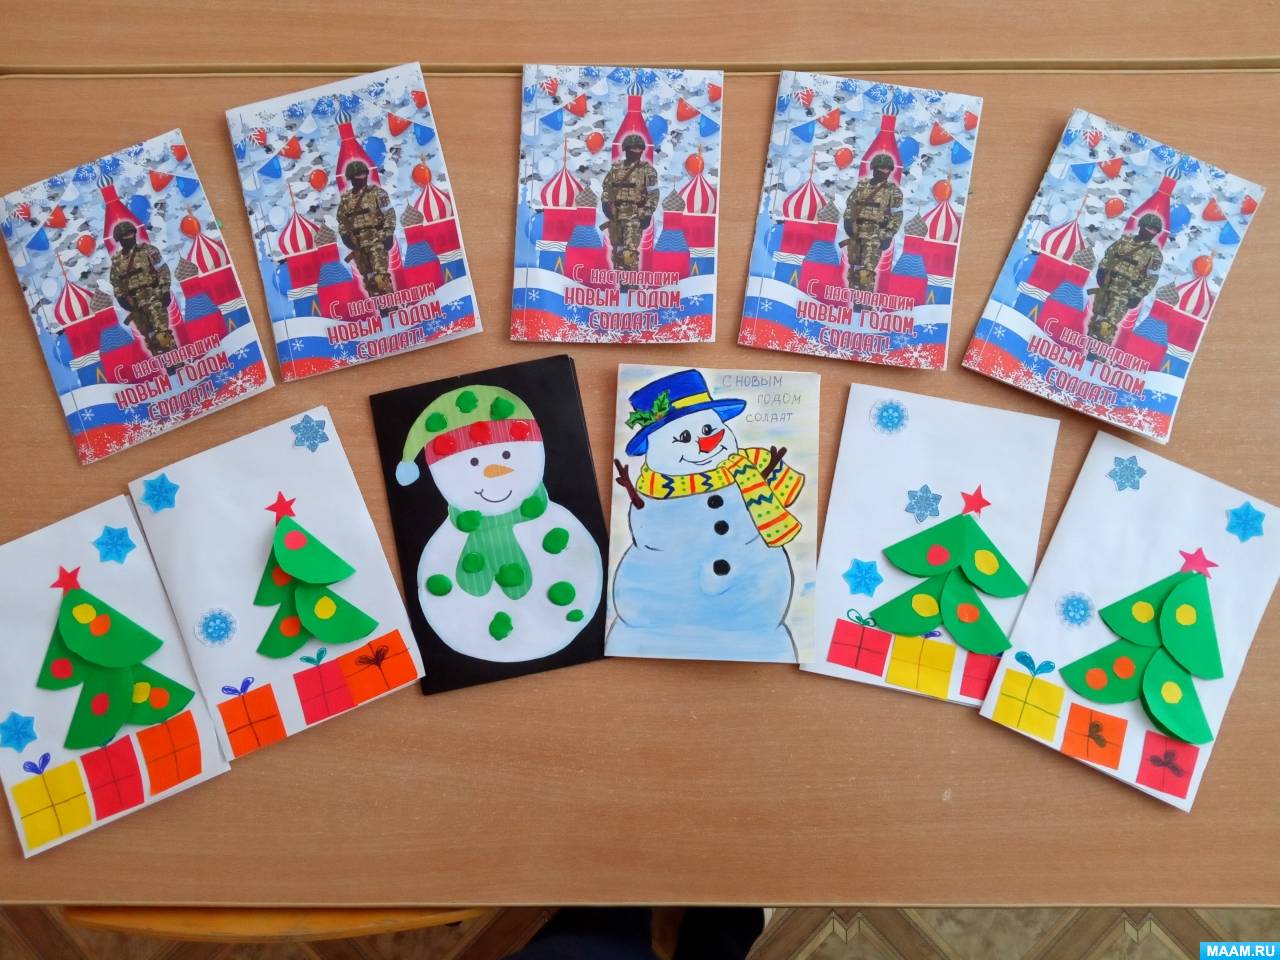 Пушистые ели и поздравительные открытки: как встречали Рождество в Царицыне